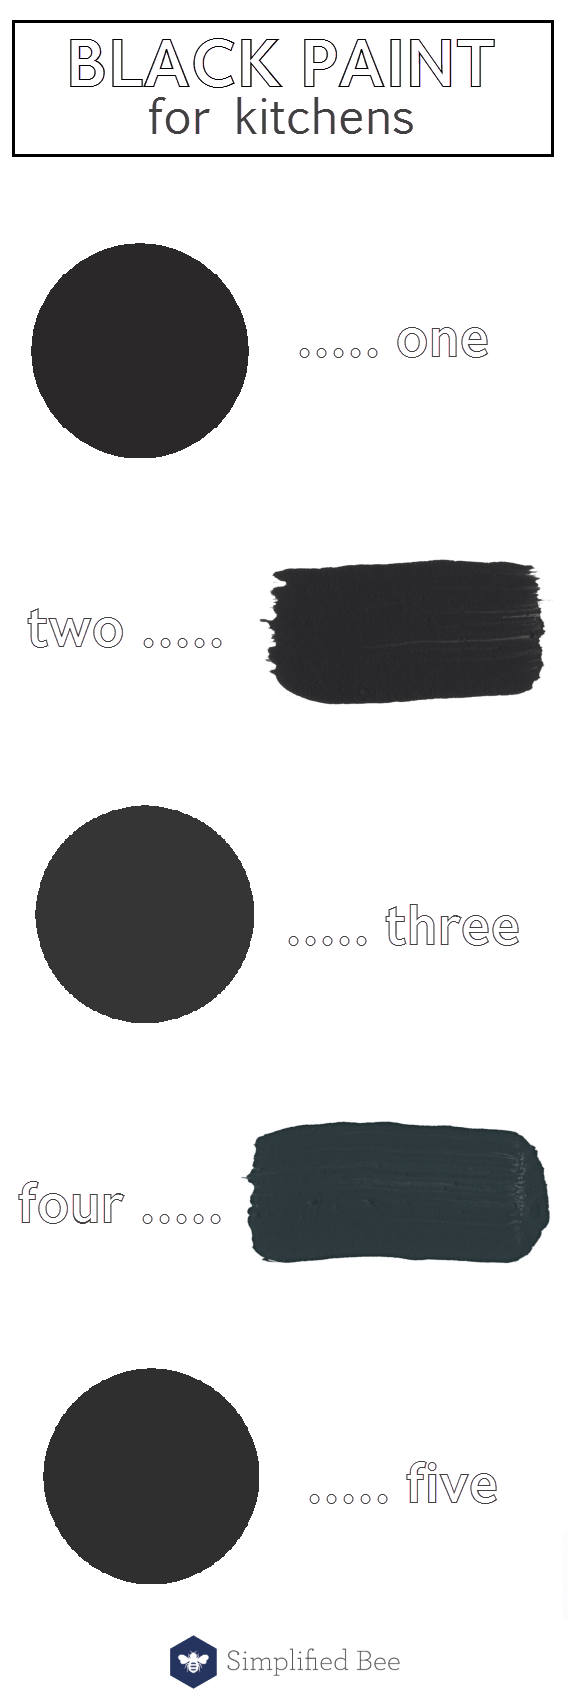 black paint colors for kitchens